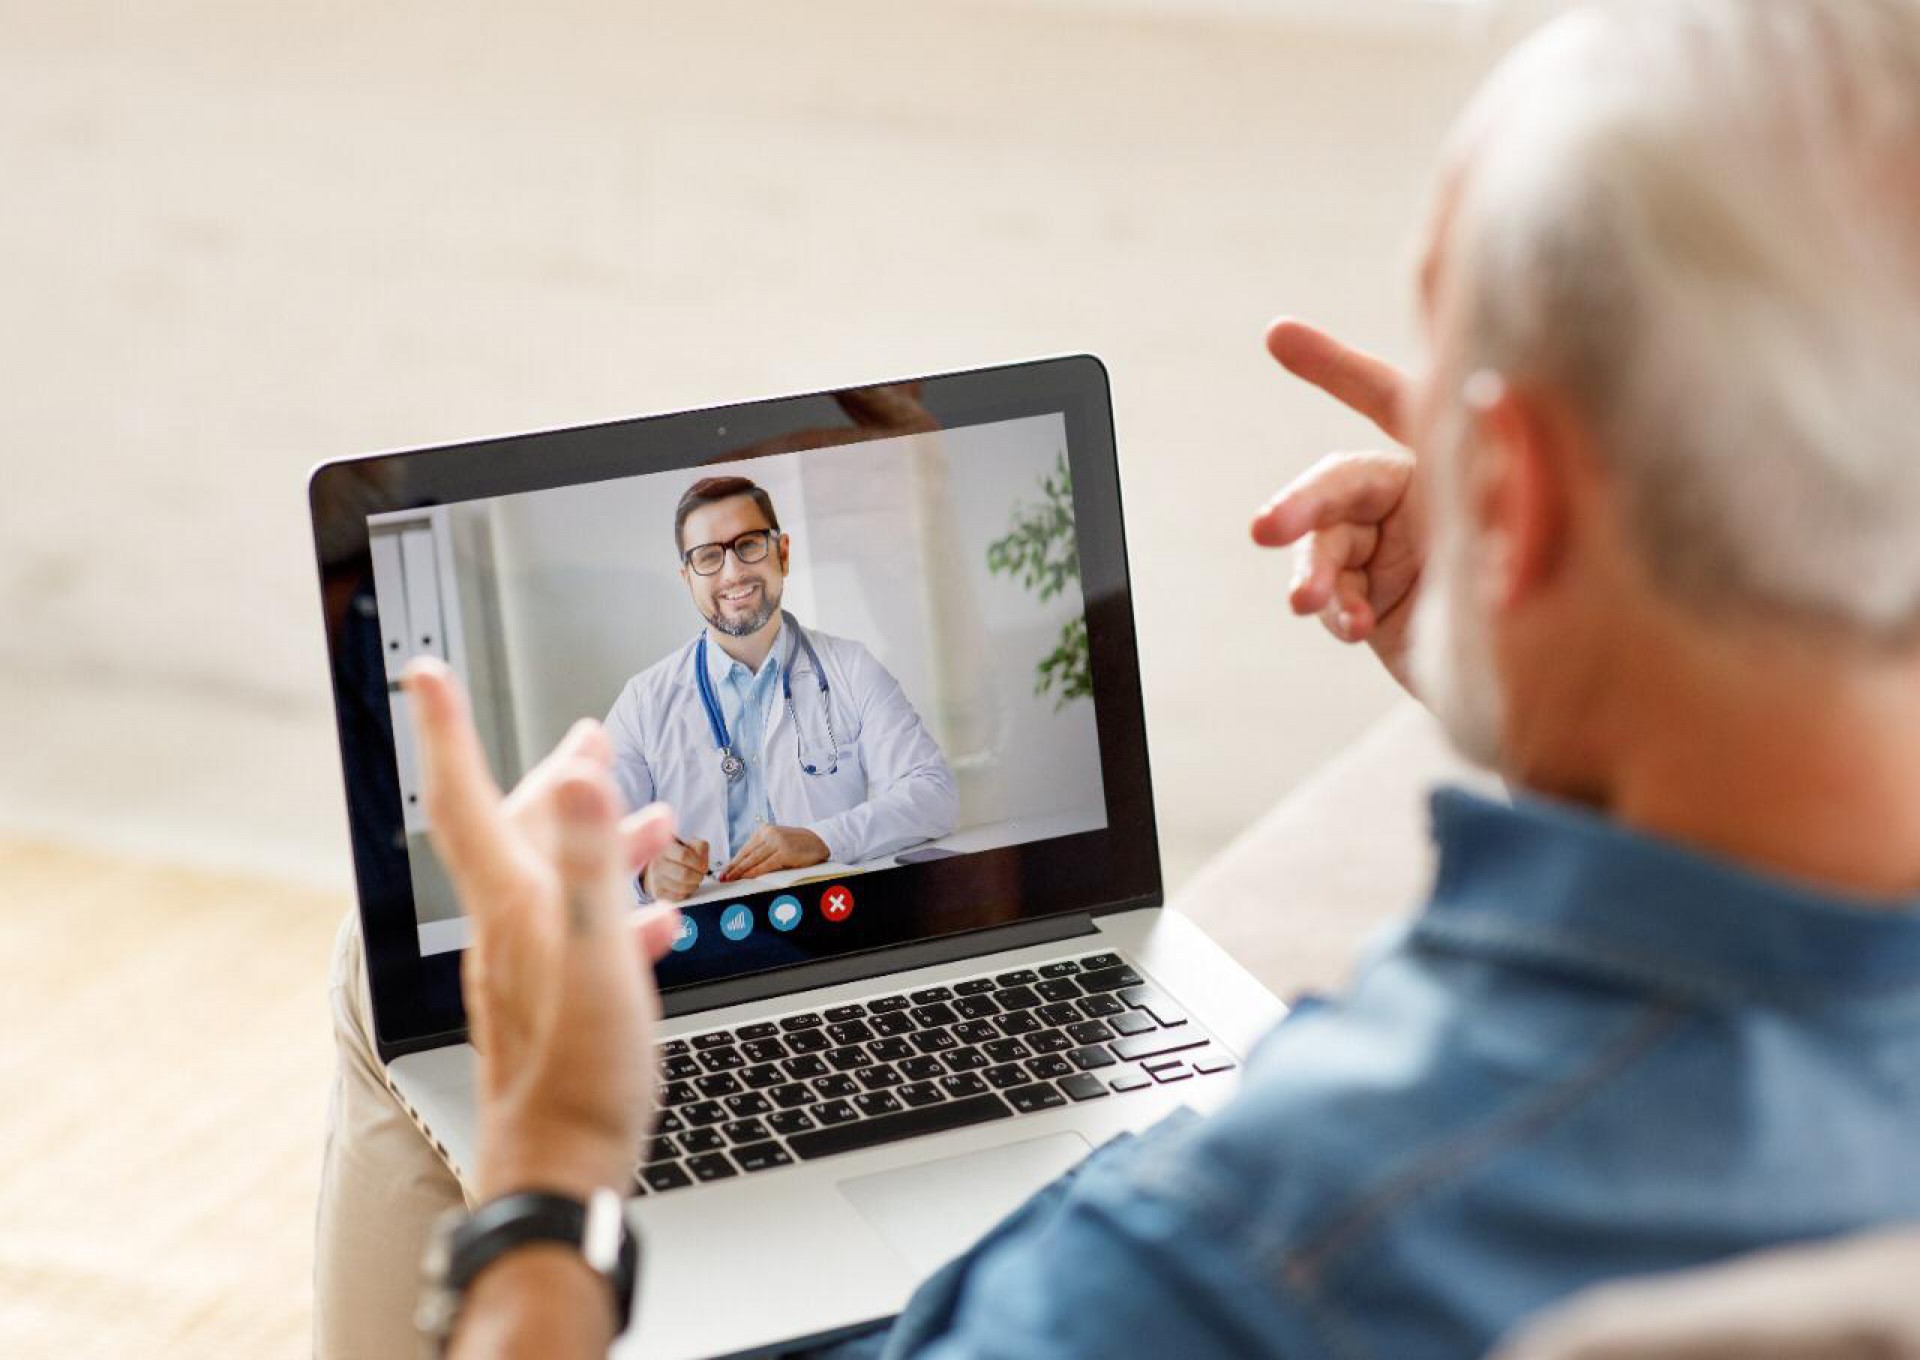 Atendimento em telemedicina é um dos principais avanços obtidos com o desenvolvimento da tecnologia no setor de saúde. (Foto: Divulgação)